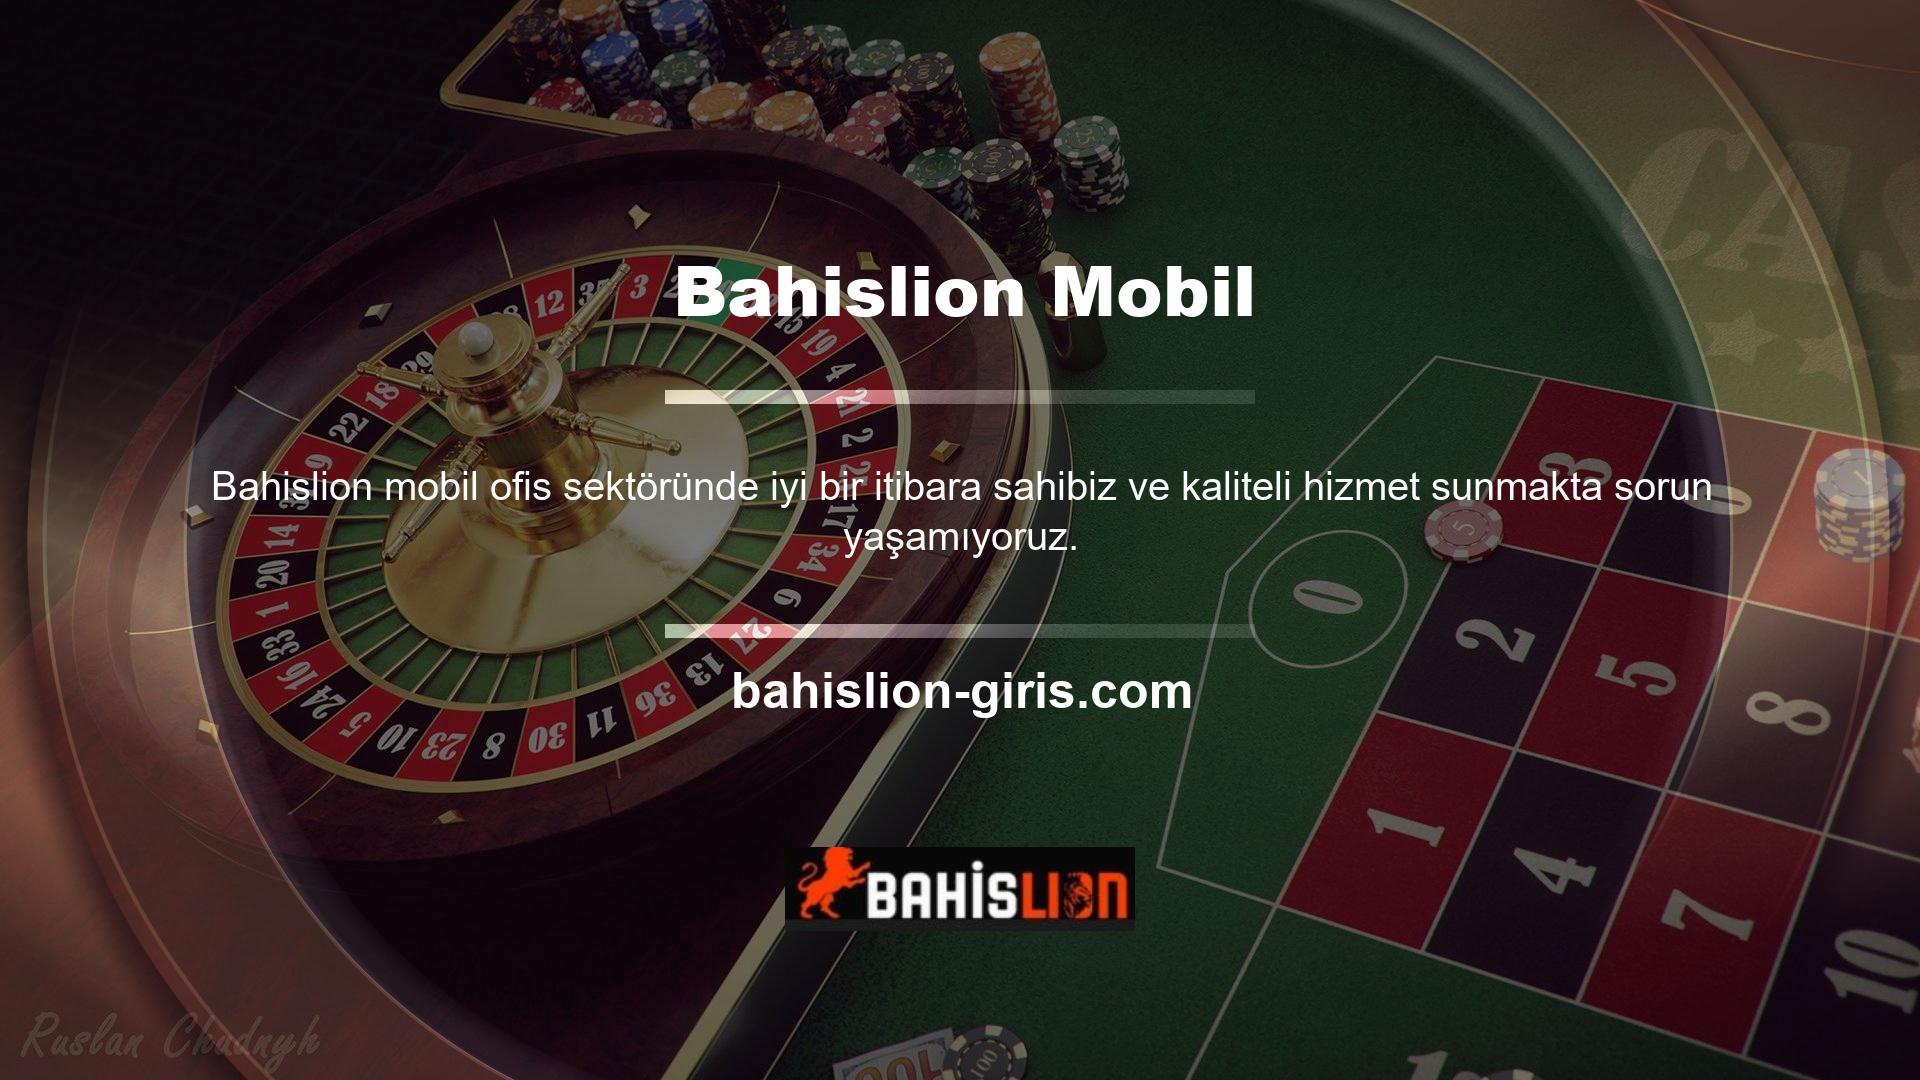 Katılımcı sayısı her geçen gün artıyor ve casino sitesi operatörleri Bahislion mobil girişinden çok memnun